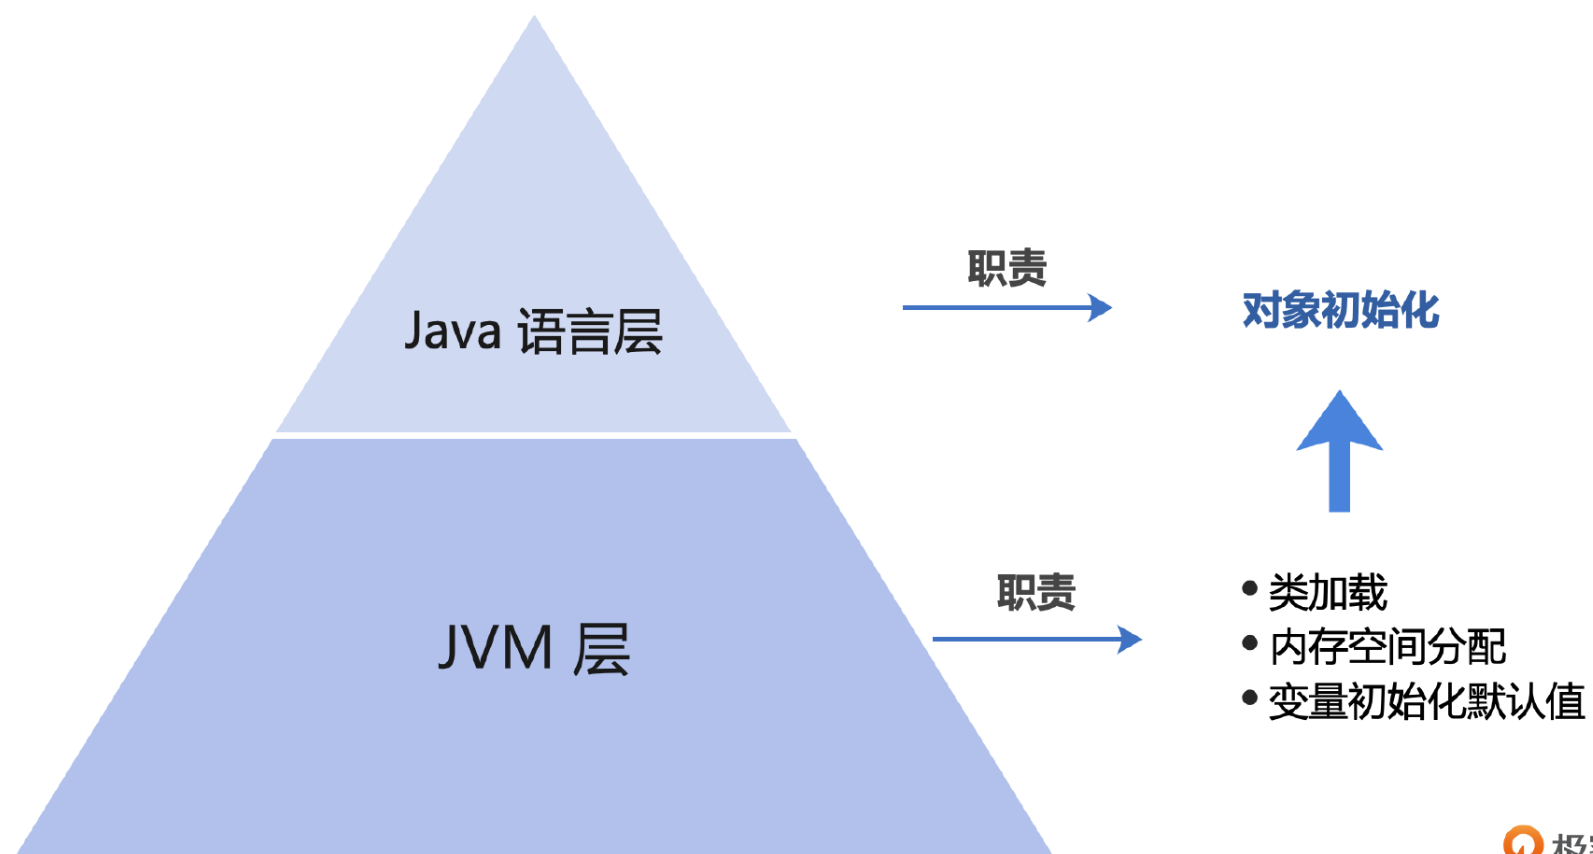 深入学习JVM03  类与对象 下篇_JVM_07